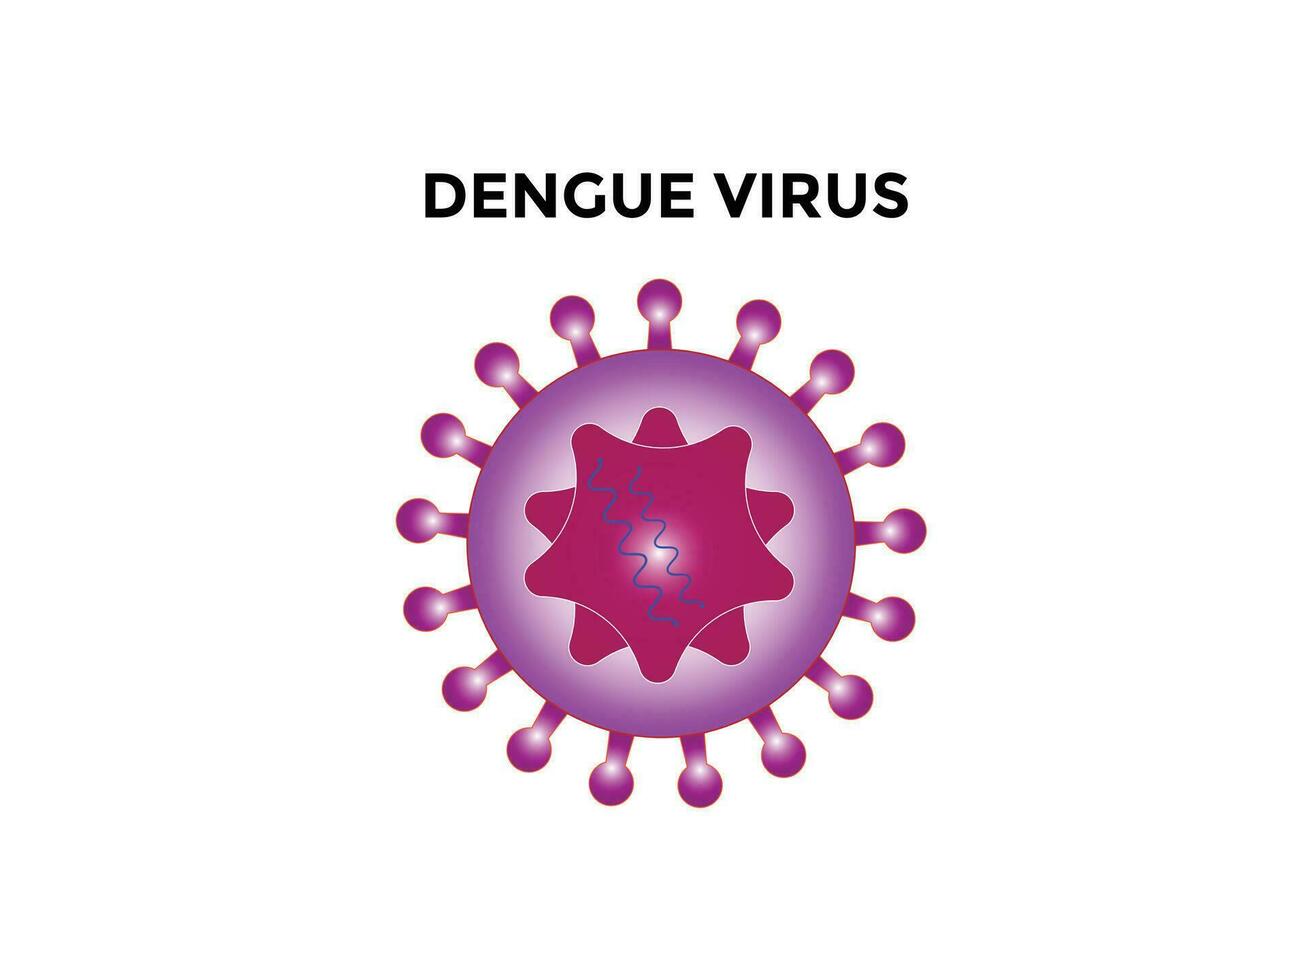 la dengue virus. la dengue virus Denver est le cause de la dengue fièvre. il est une transmis par les moustiques, Célibataire brin positif rna virus. virion comprend rna brins, protéines, et enveloppes. vecteur